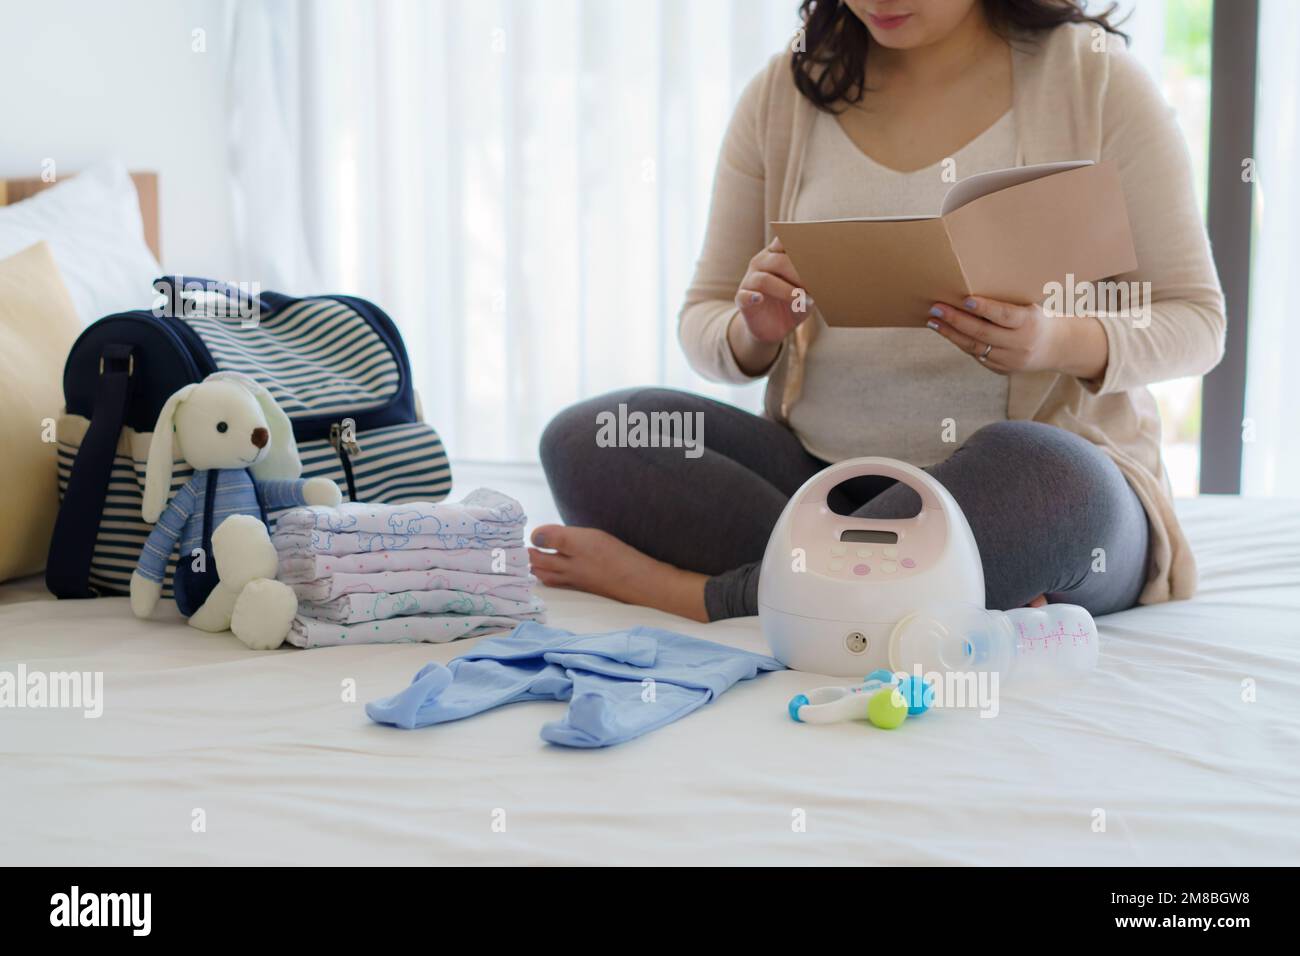 Asiatische Schwangerschaftskalender- und Babyphone-Utensilien, Behältervorbereitung für Schwangerschaftskonzept. Stockfoto